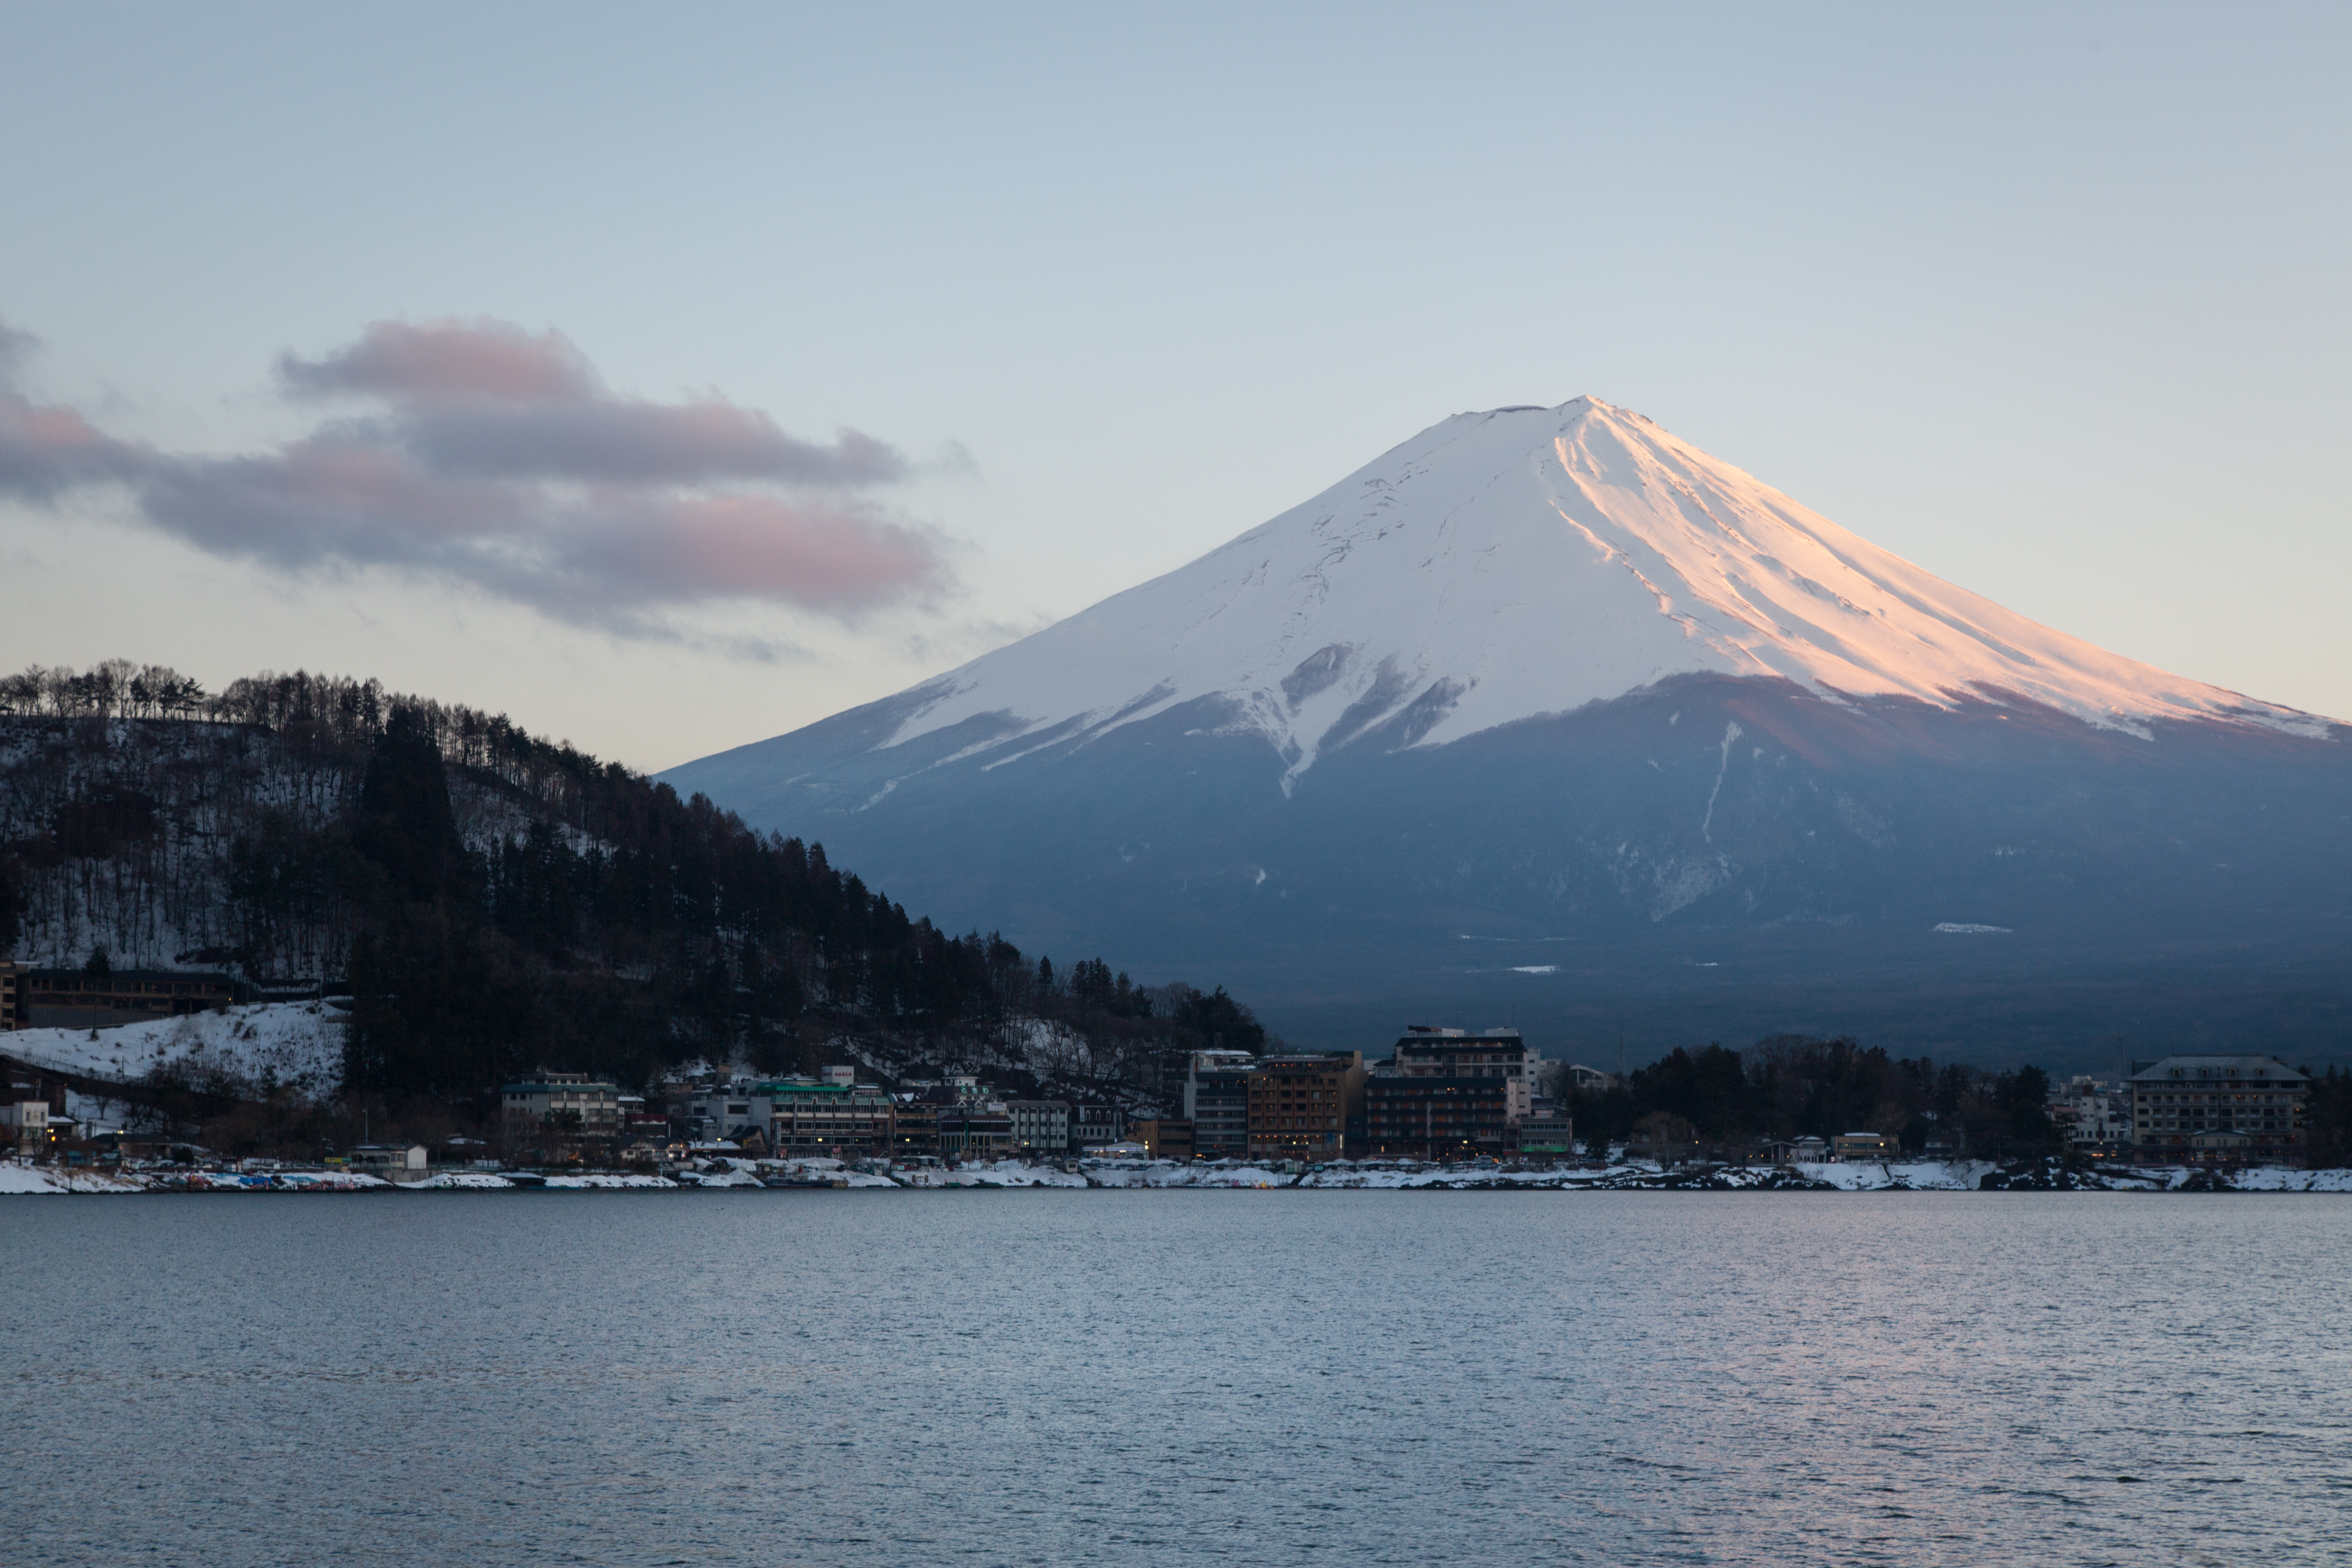 Trip to Mt. Fuji and Kawaguchiko